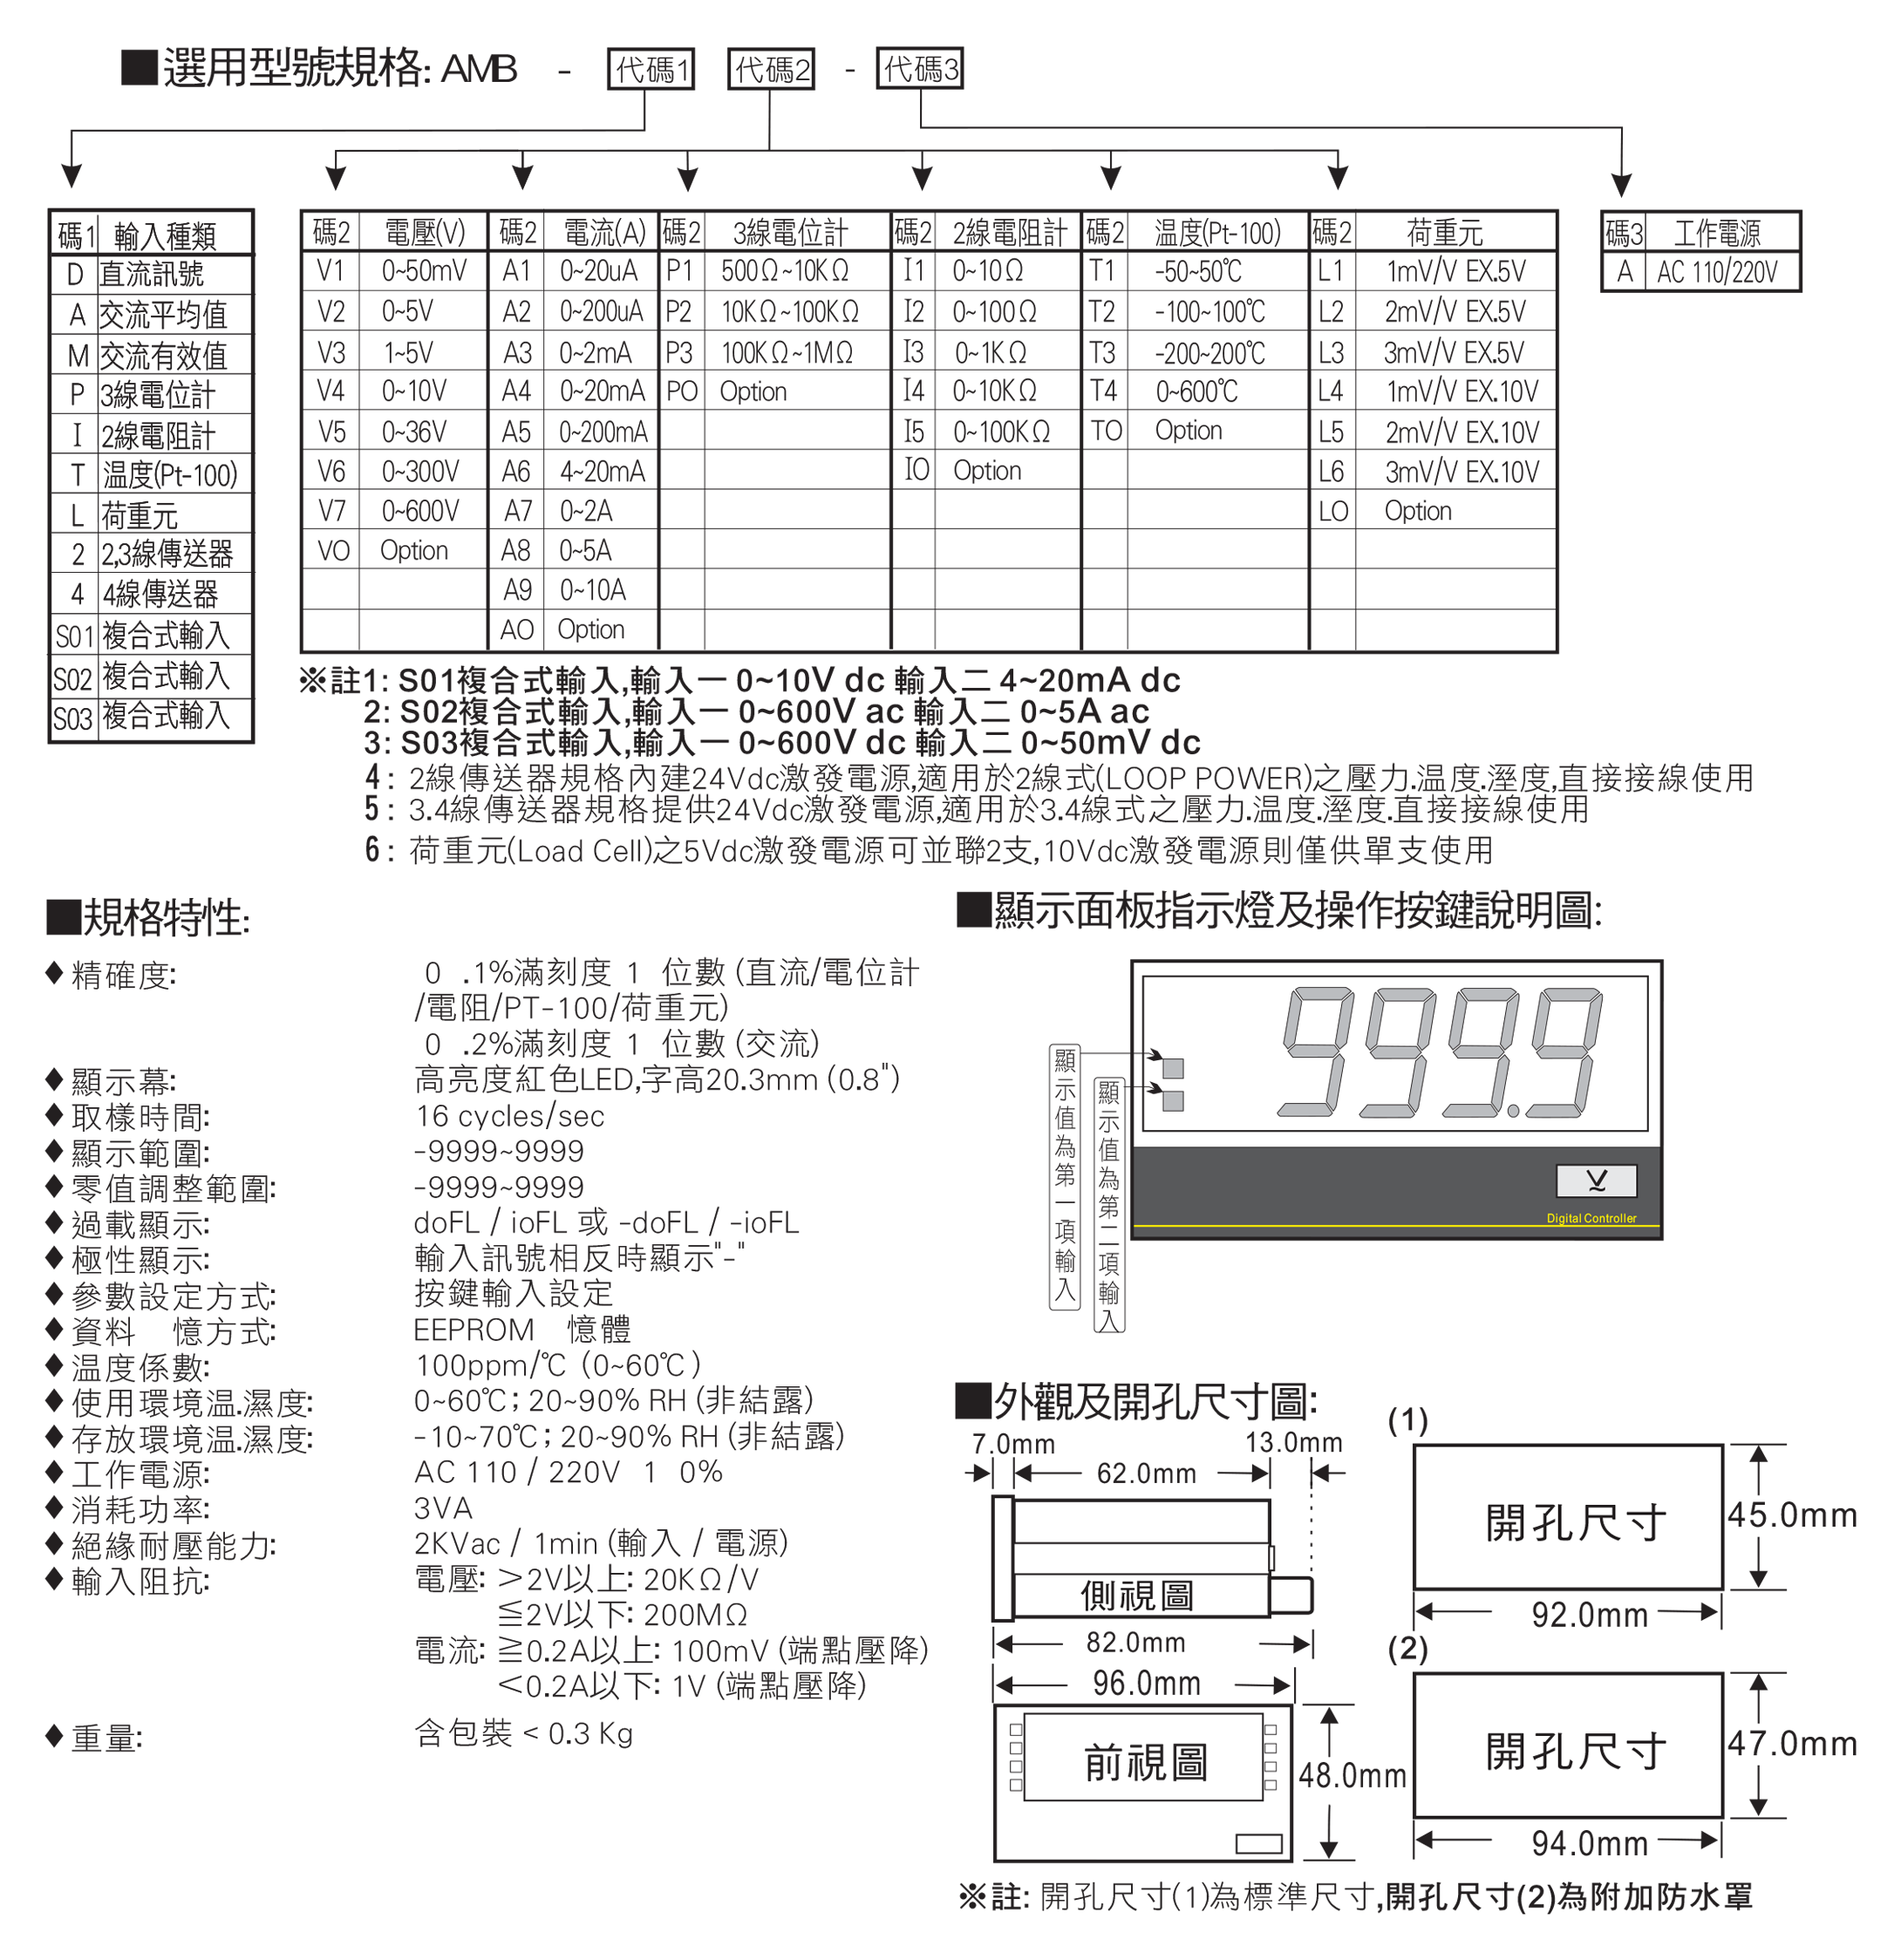 數位式溫度表/數位式溫度顯示器/溫度顯示表/電子溫度表規格 - 昌揚科技有限公司